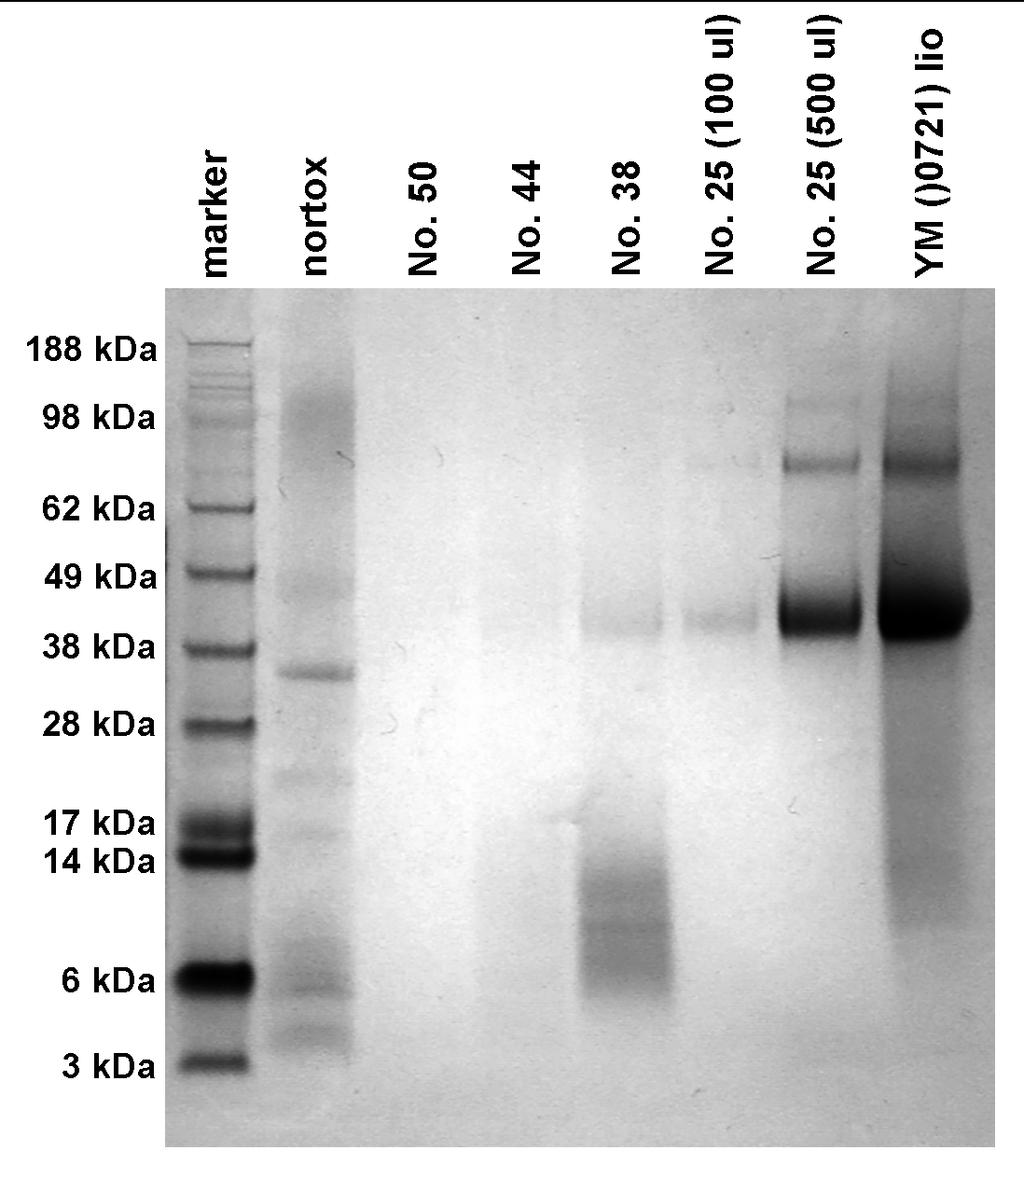 22. ábra: Komplett fermentlé Sephadex oszlopon történő tisztítását követően a különböző frakciók SDS PAGE képe nortox: C.